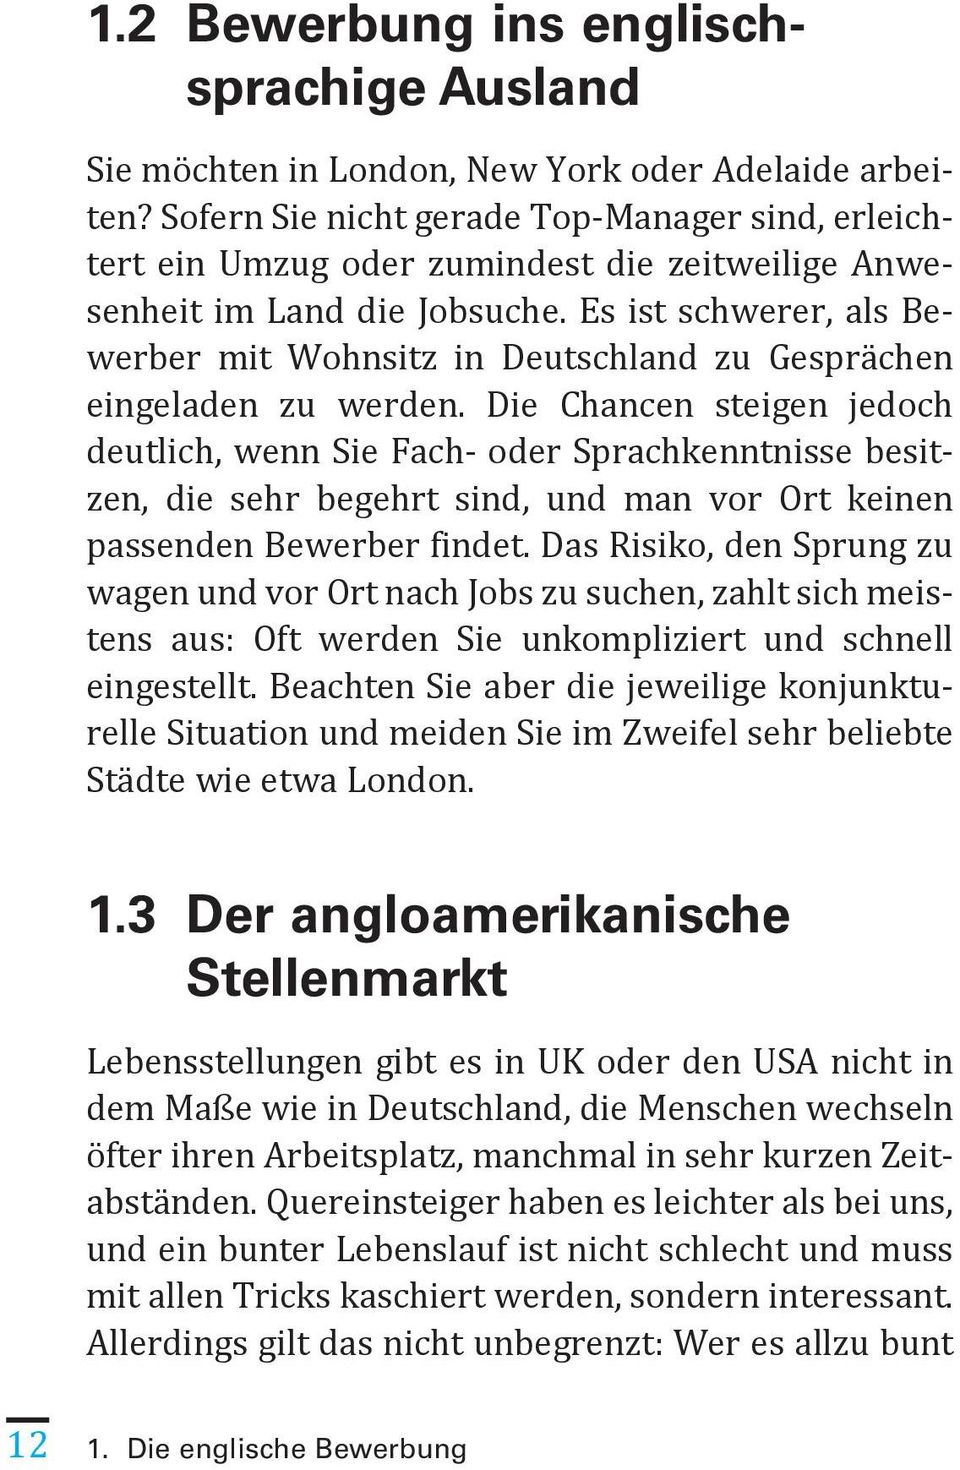 Wissen Sie Wie Man Sich Auf Englisch Innerhalb Deutschlands Bewirbt Seite 10 Kennen Sie Die Besonderheiten Des Angloamerikanischen Stellenmarktes Pdf Kostenfreier Download